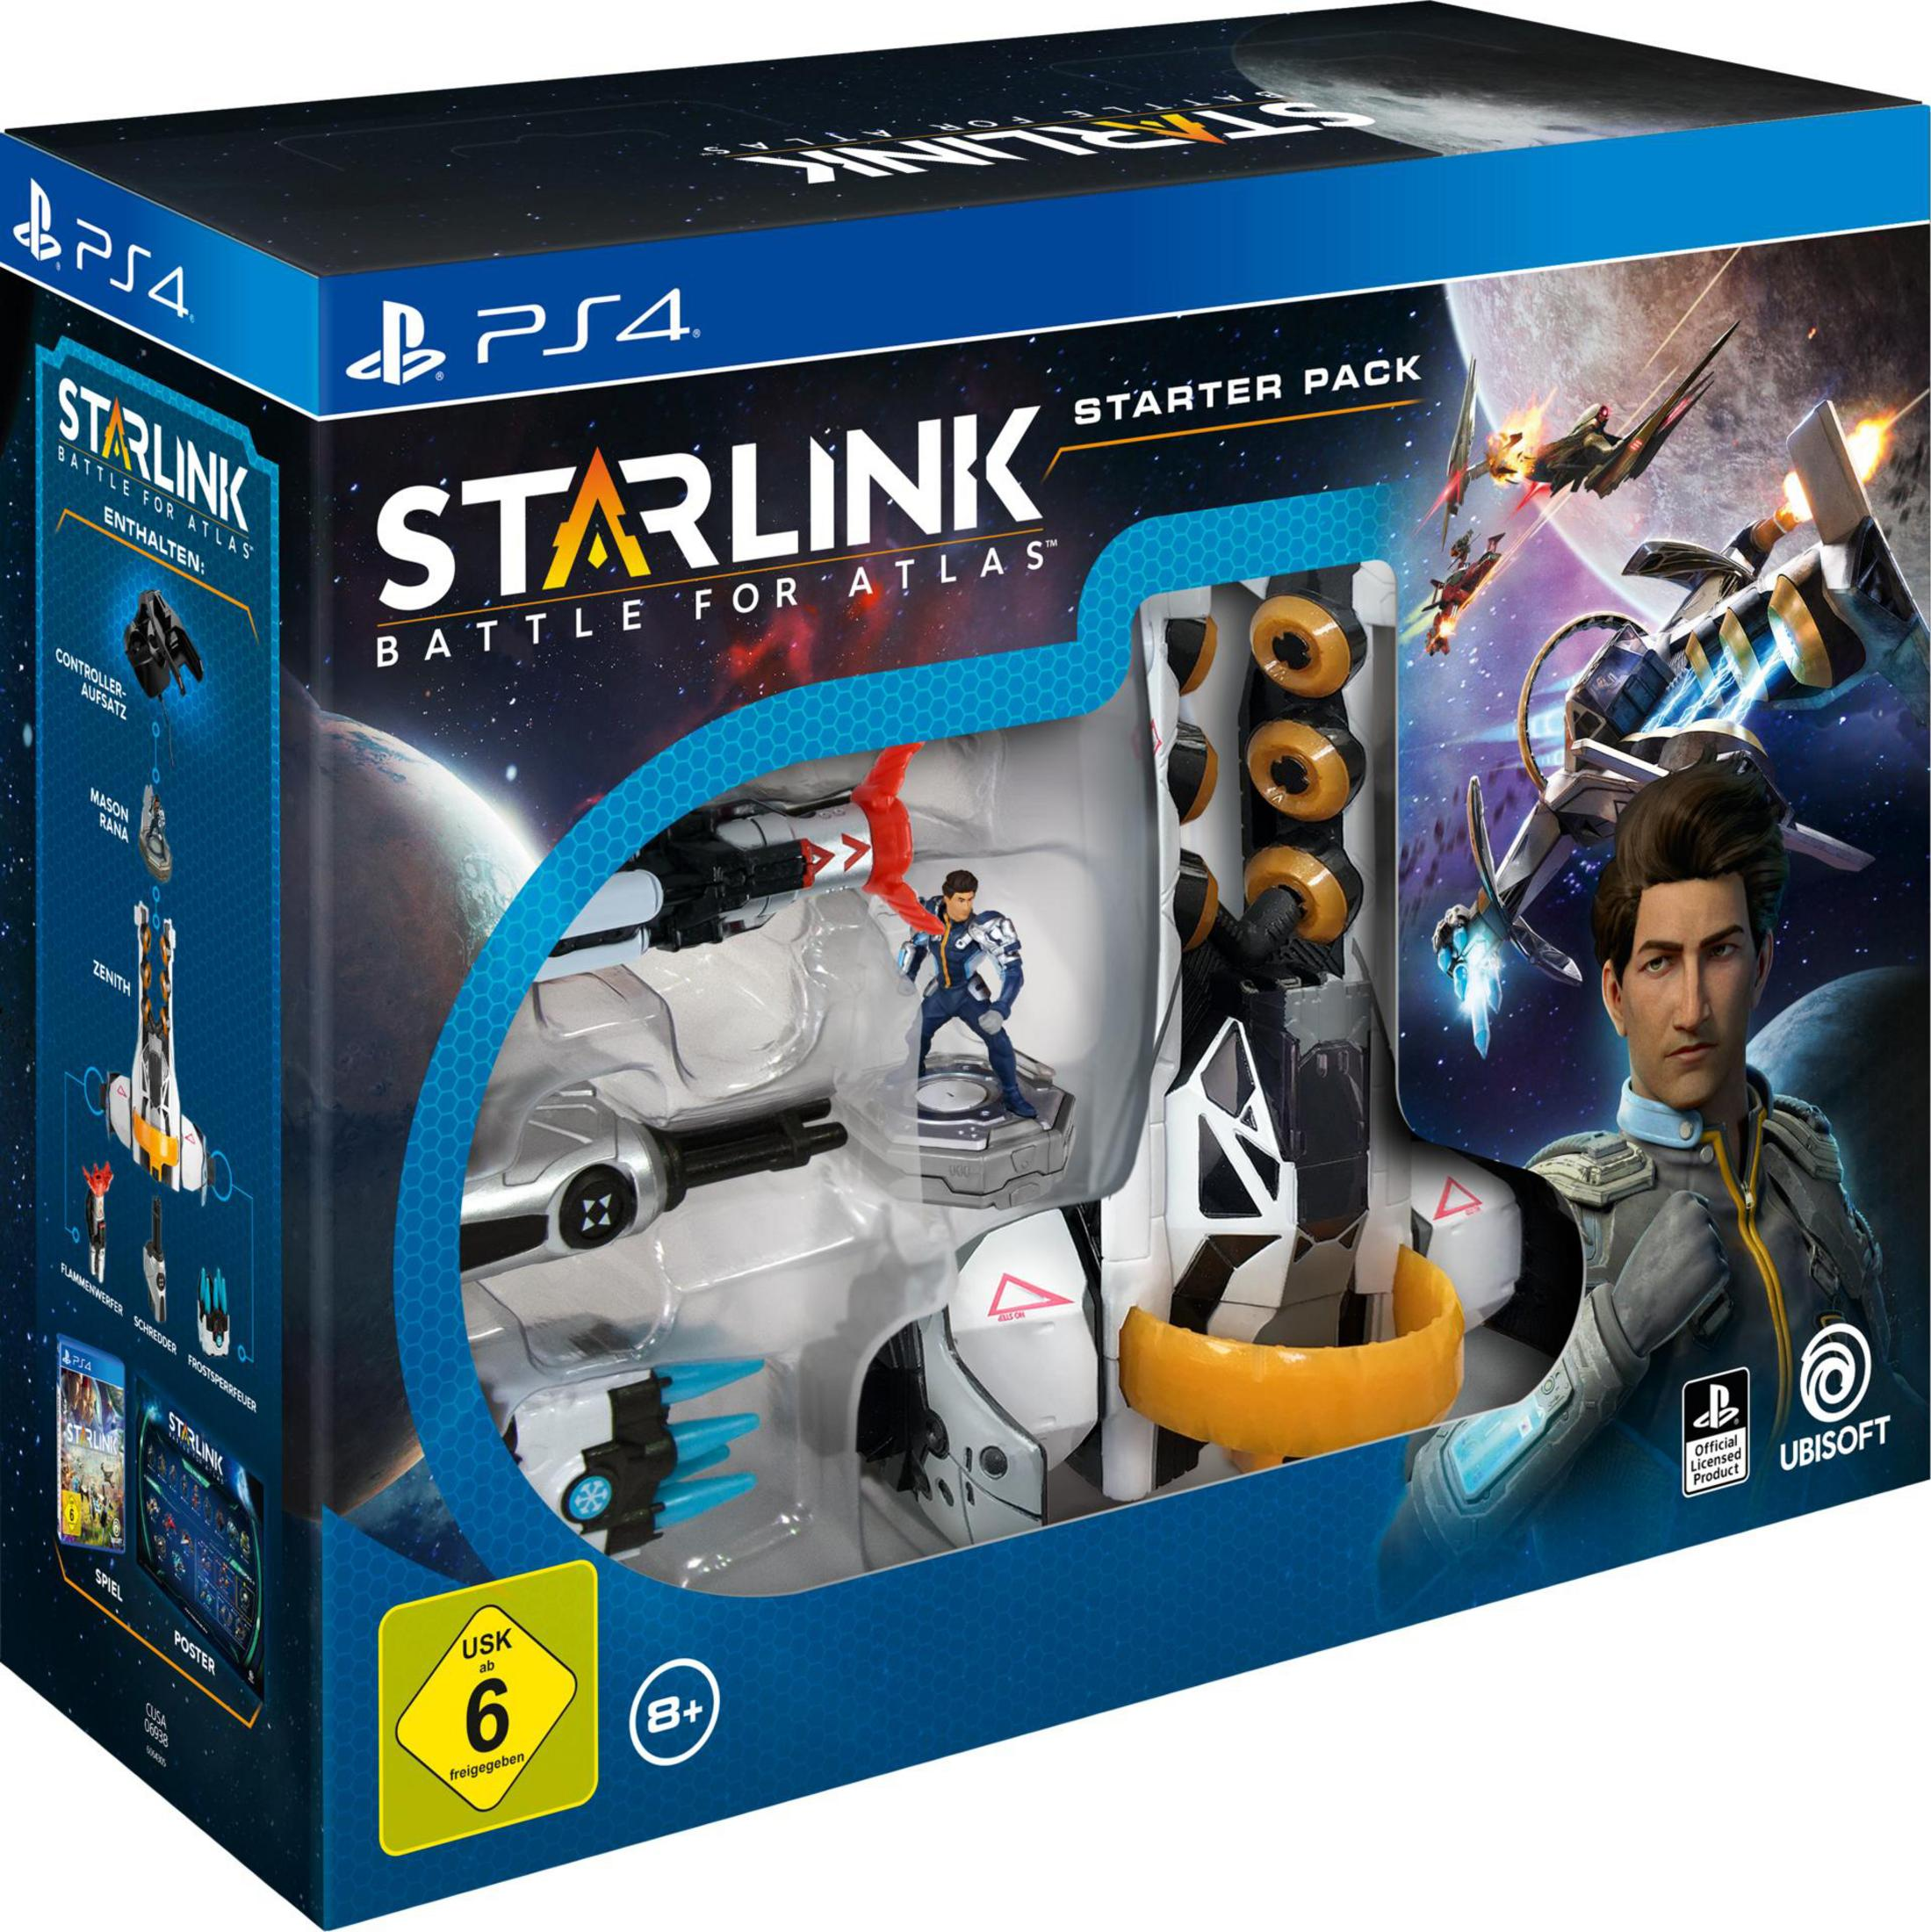 Pack Atlas Starter Starlink: 4] - Battle - PS4 for [PlayStation